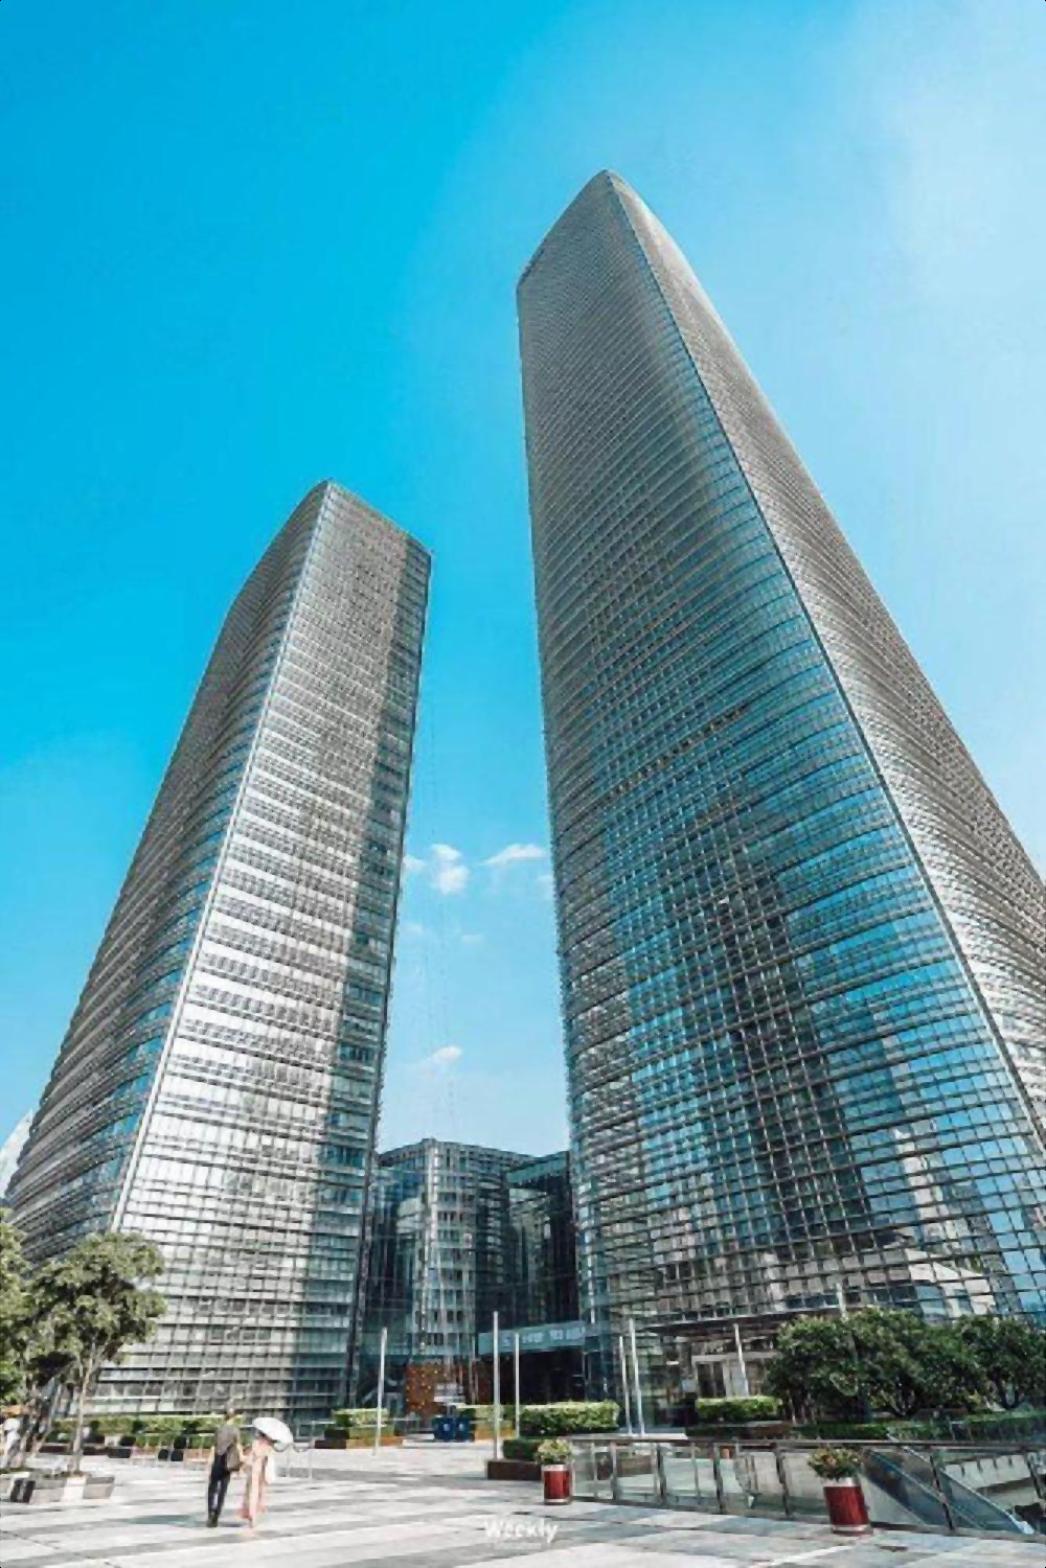 海岸城后海中心中洲中心大厦精装修办公室带家私电梯口!